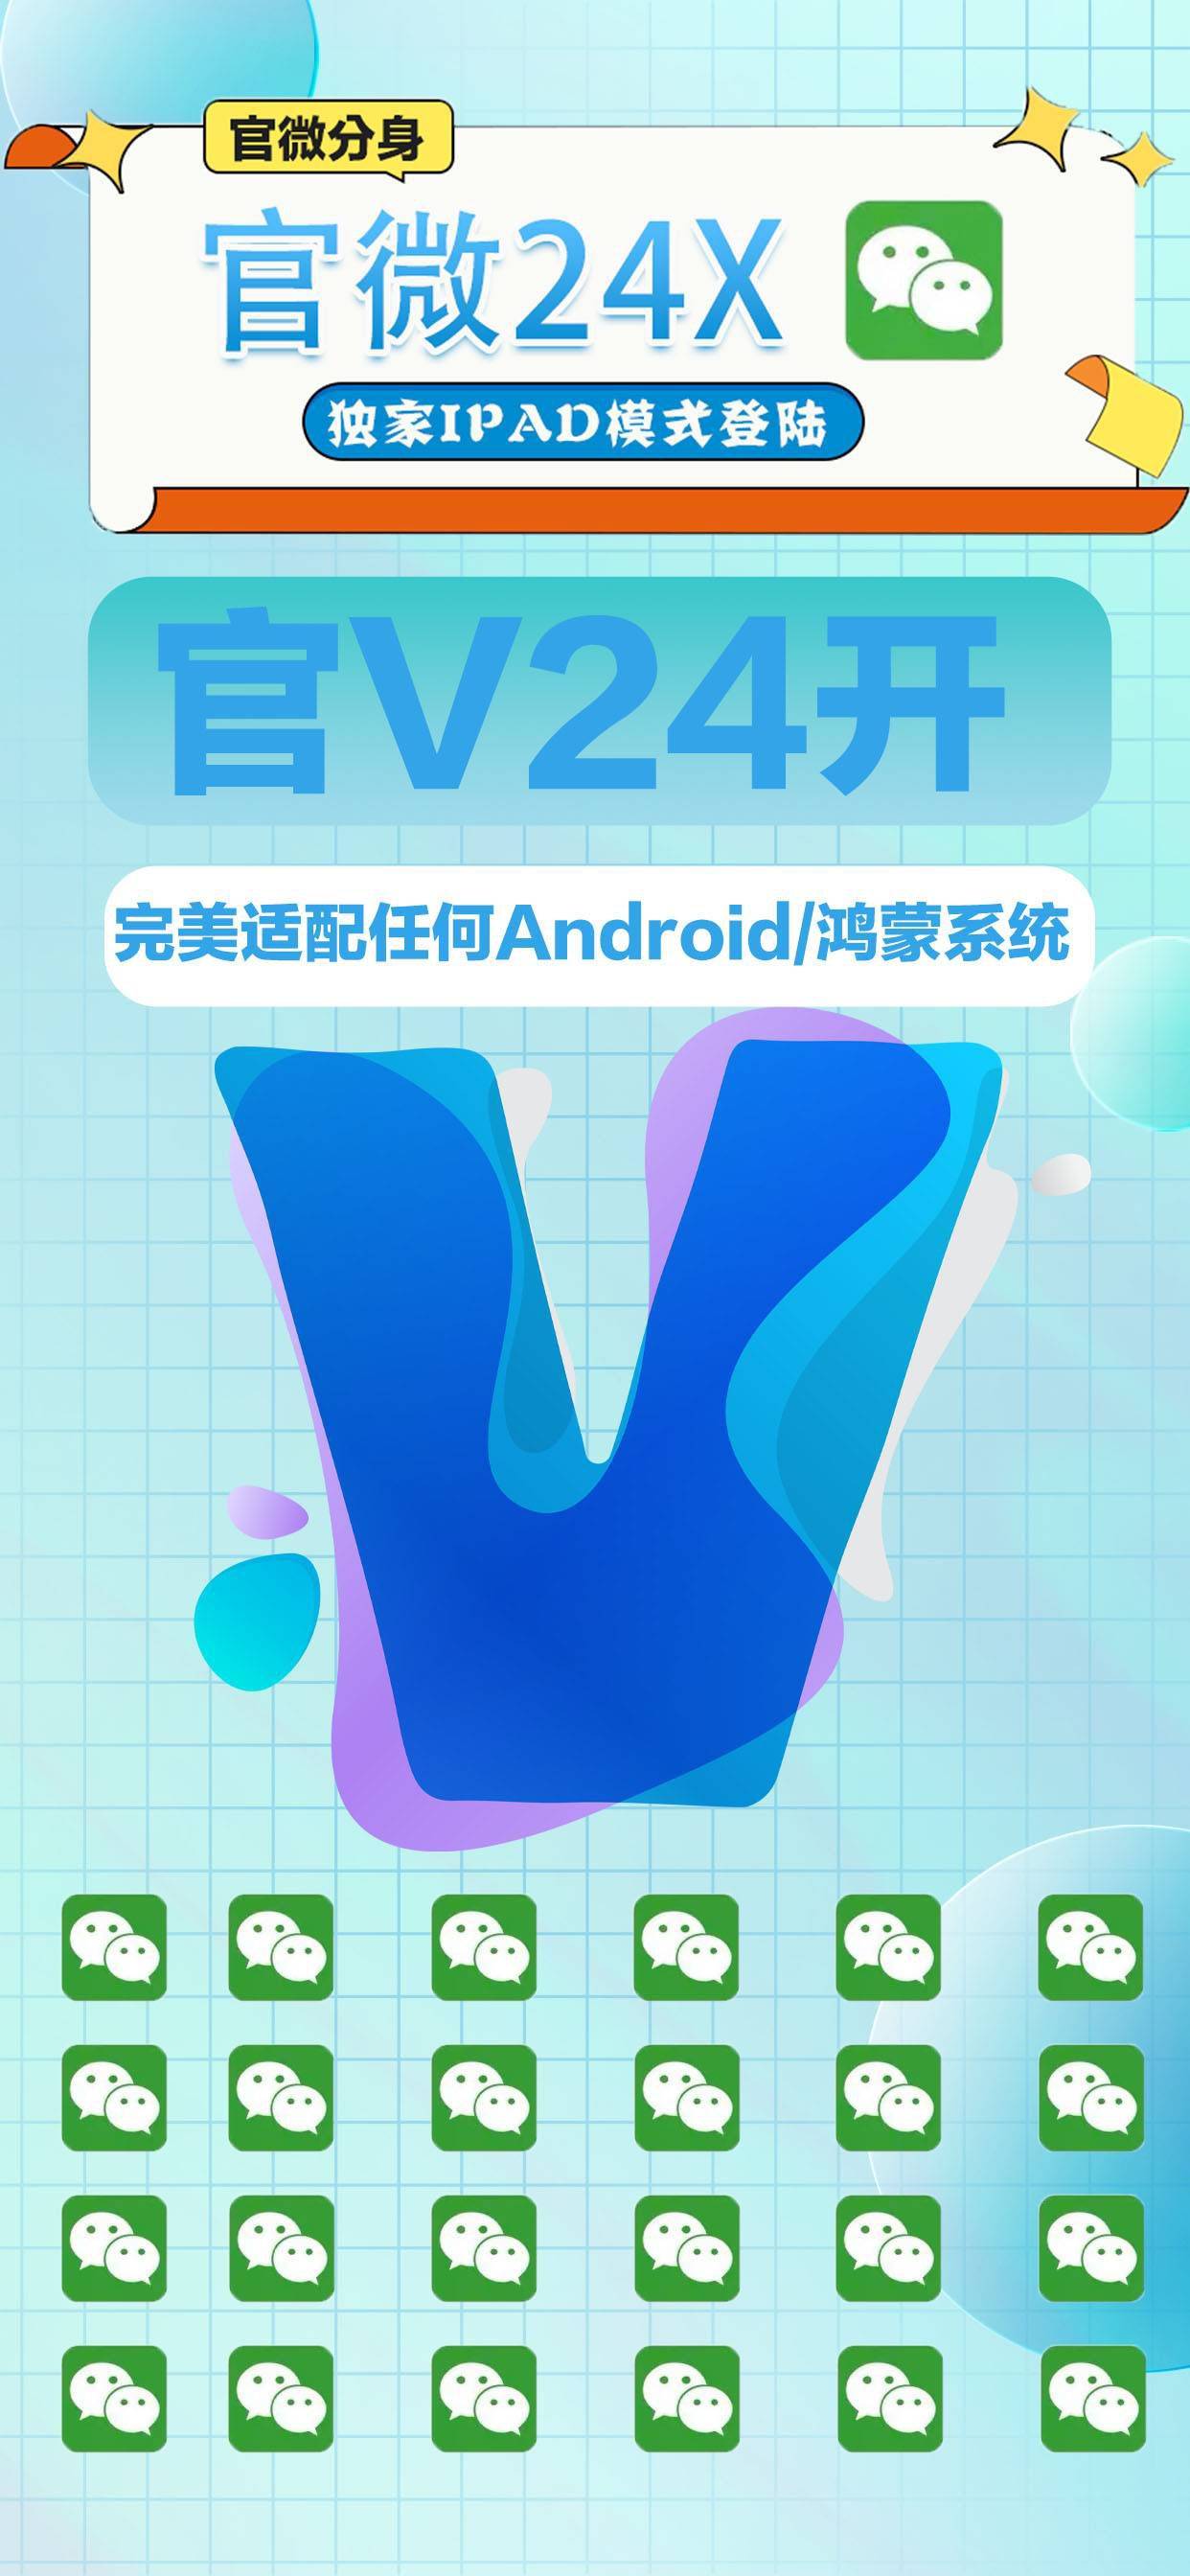 官V24开无功能安卓微信多开分身软件激活码